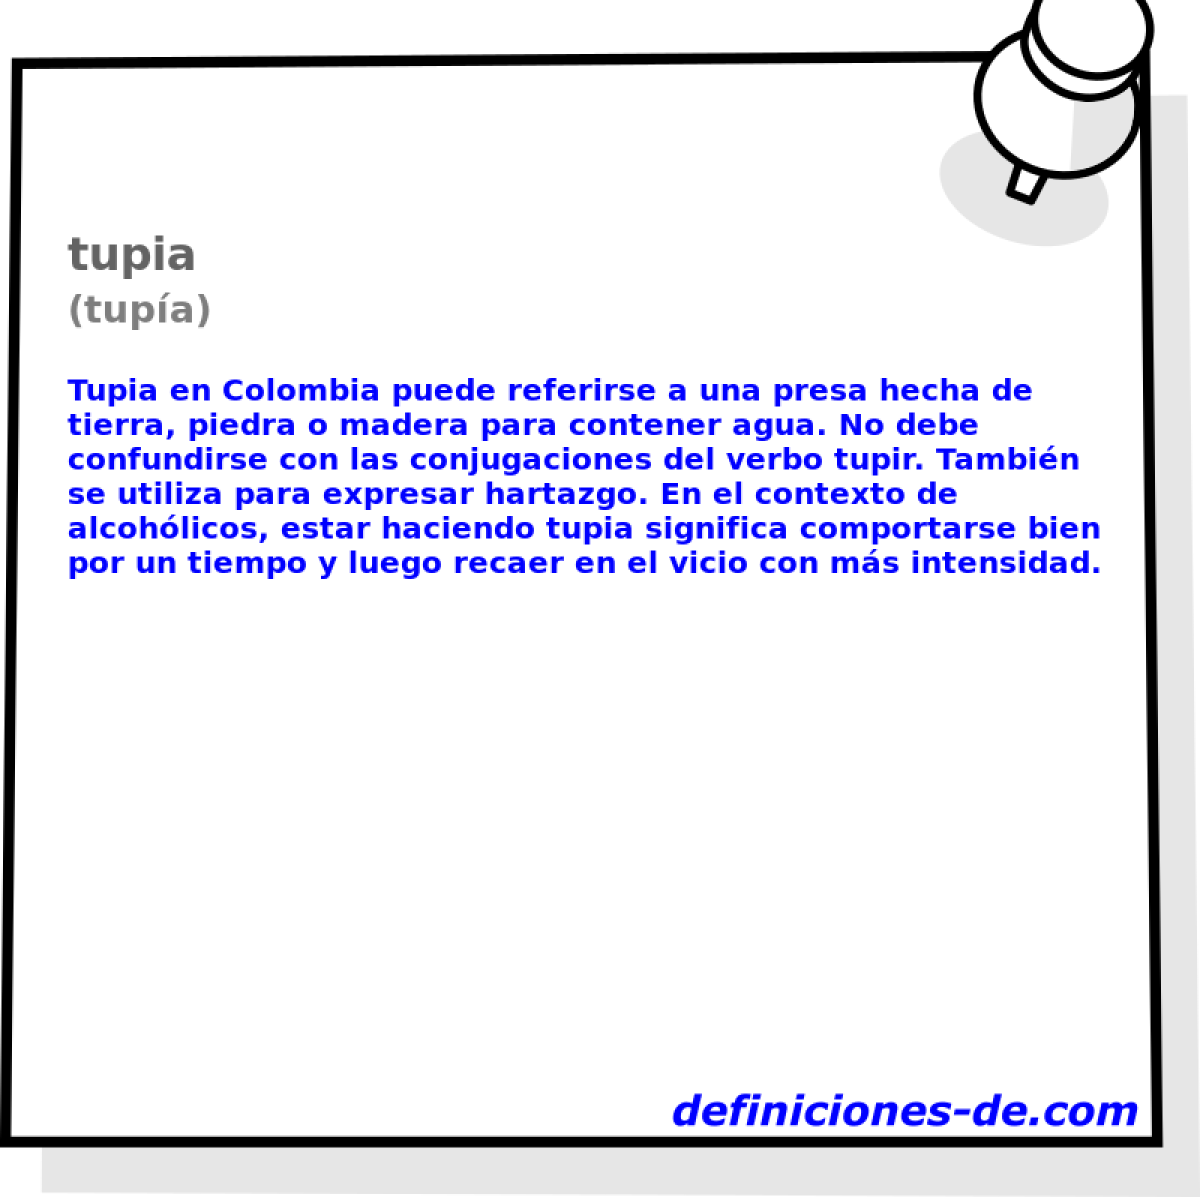 tupia (tupa)